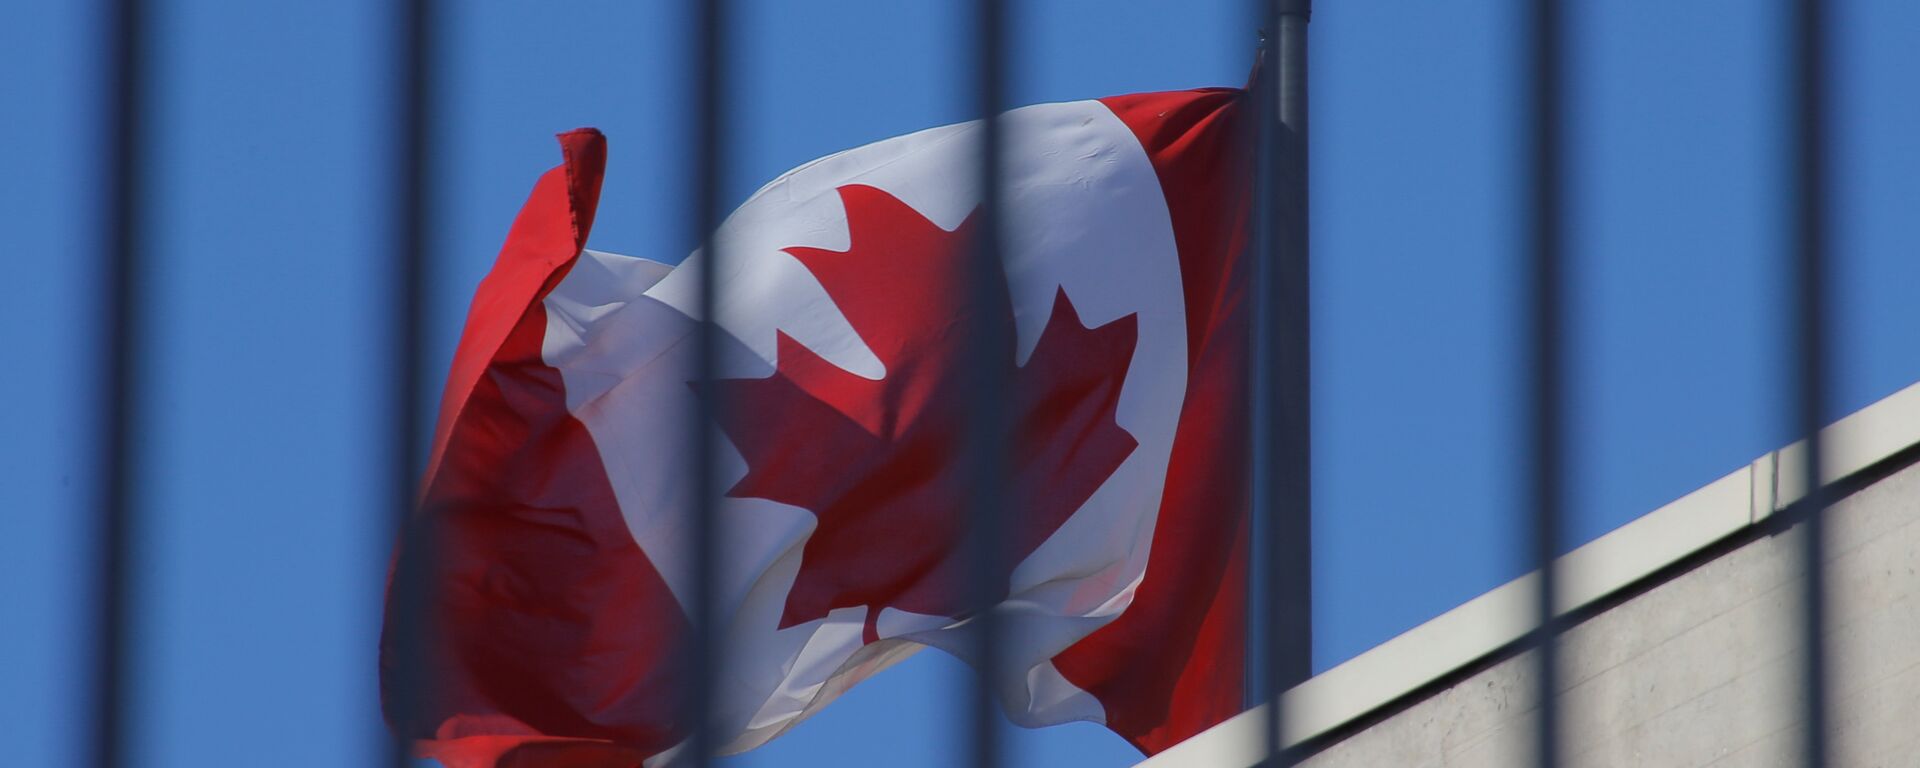 Bandera de Canadá - Sputnik Mundo, 1920, 22.01.2019